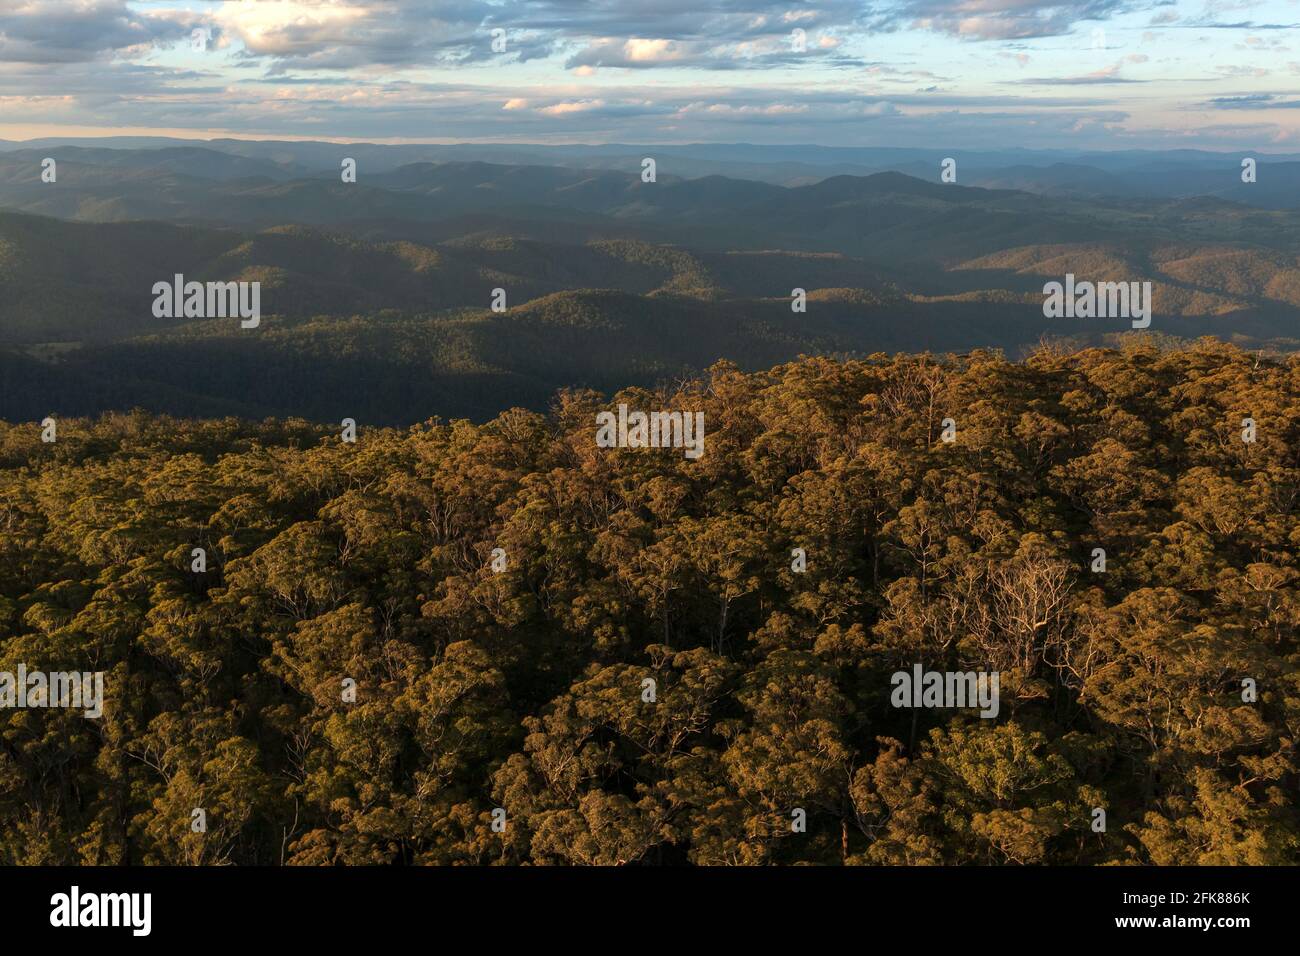 Puesta de sol sobre un antiguo bosque de eucaliptos en lo alto de la Gran Cordillera Divisoria cerca de Nowendoc, Nueva Gales del Sur, Australia. Foto de stock